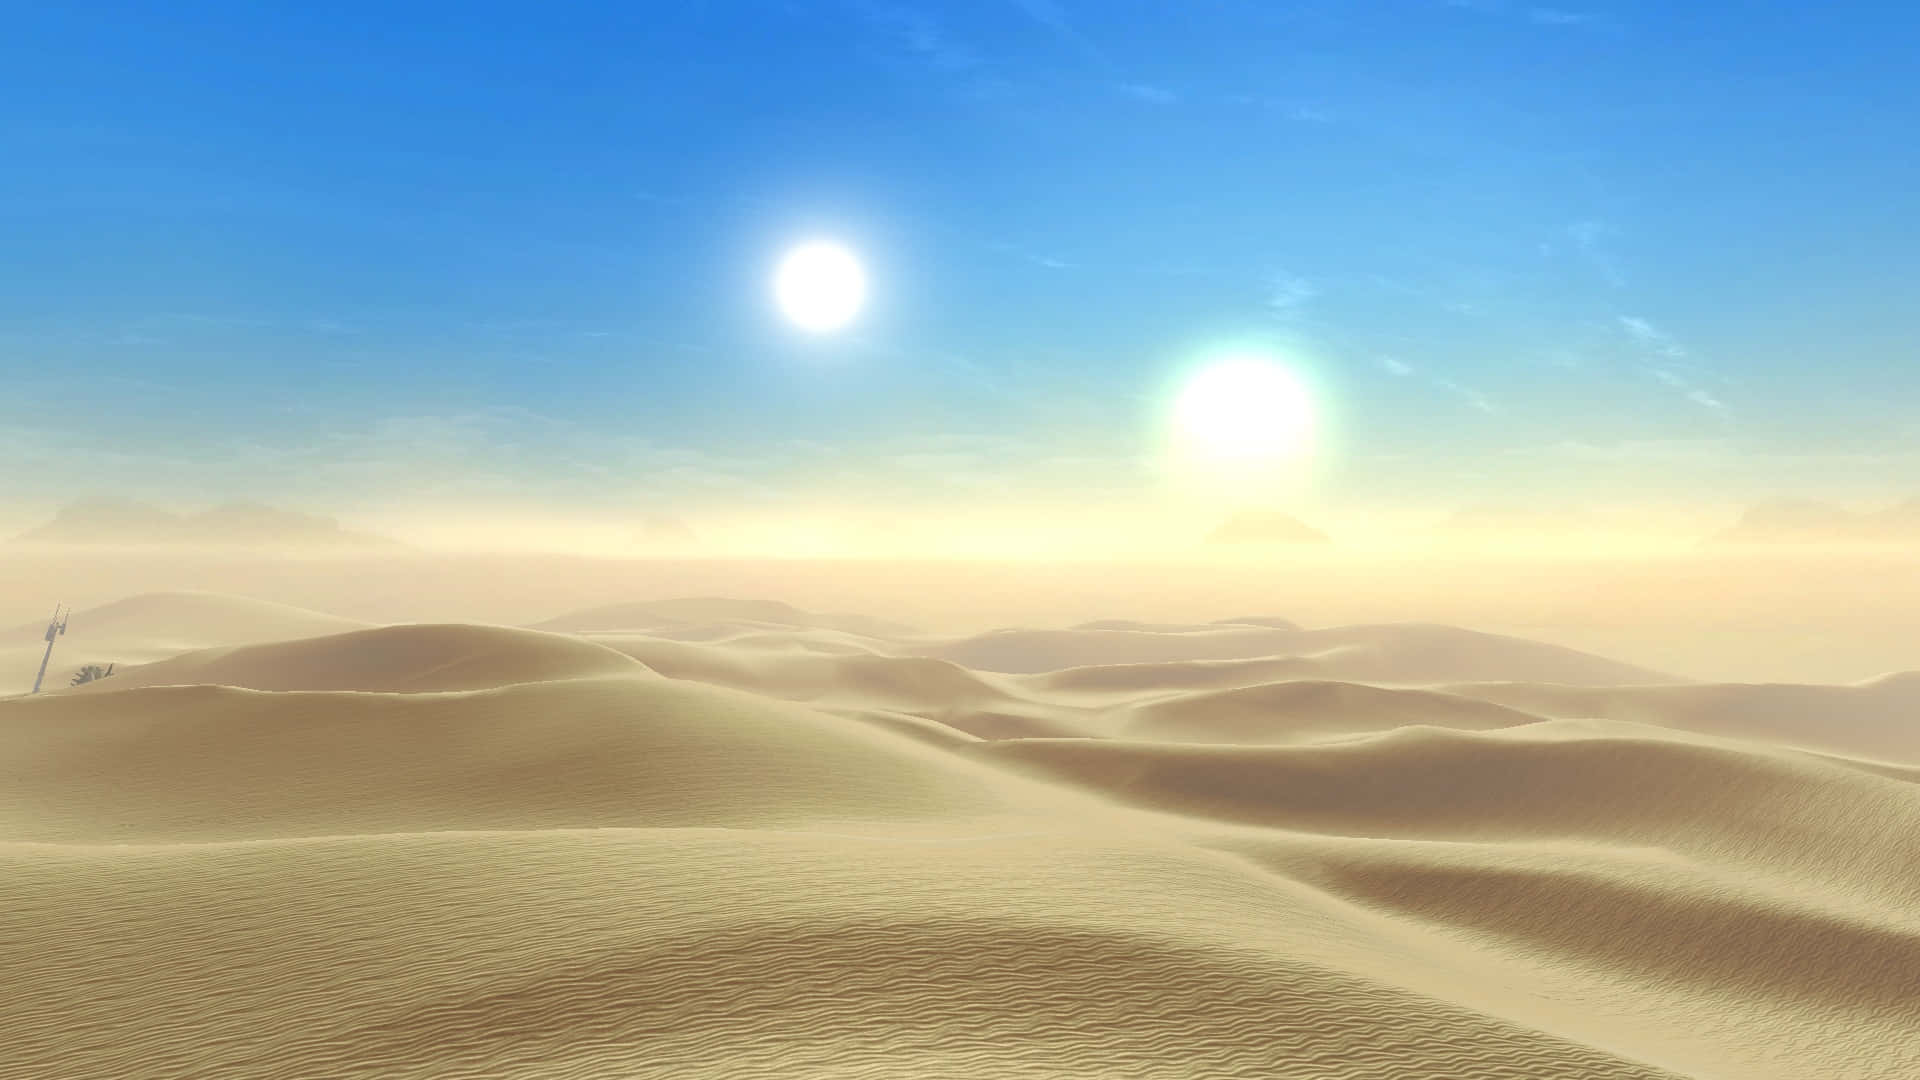 Ljussol På Tatooine-bakgrund.